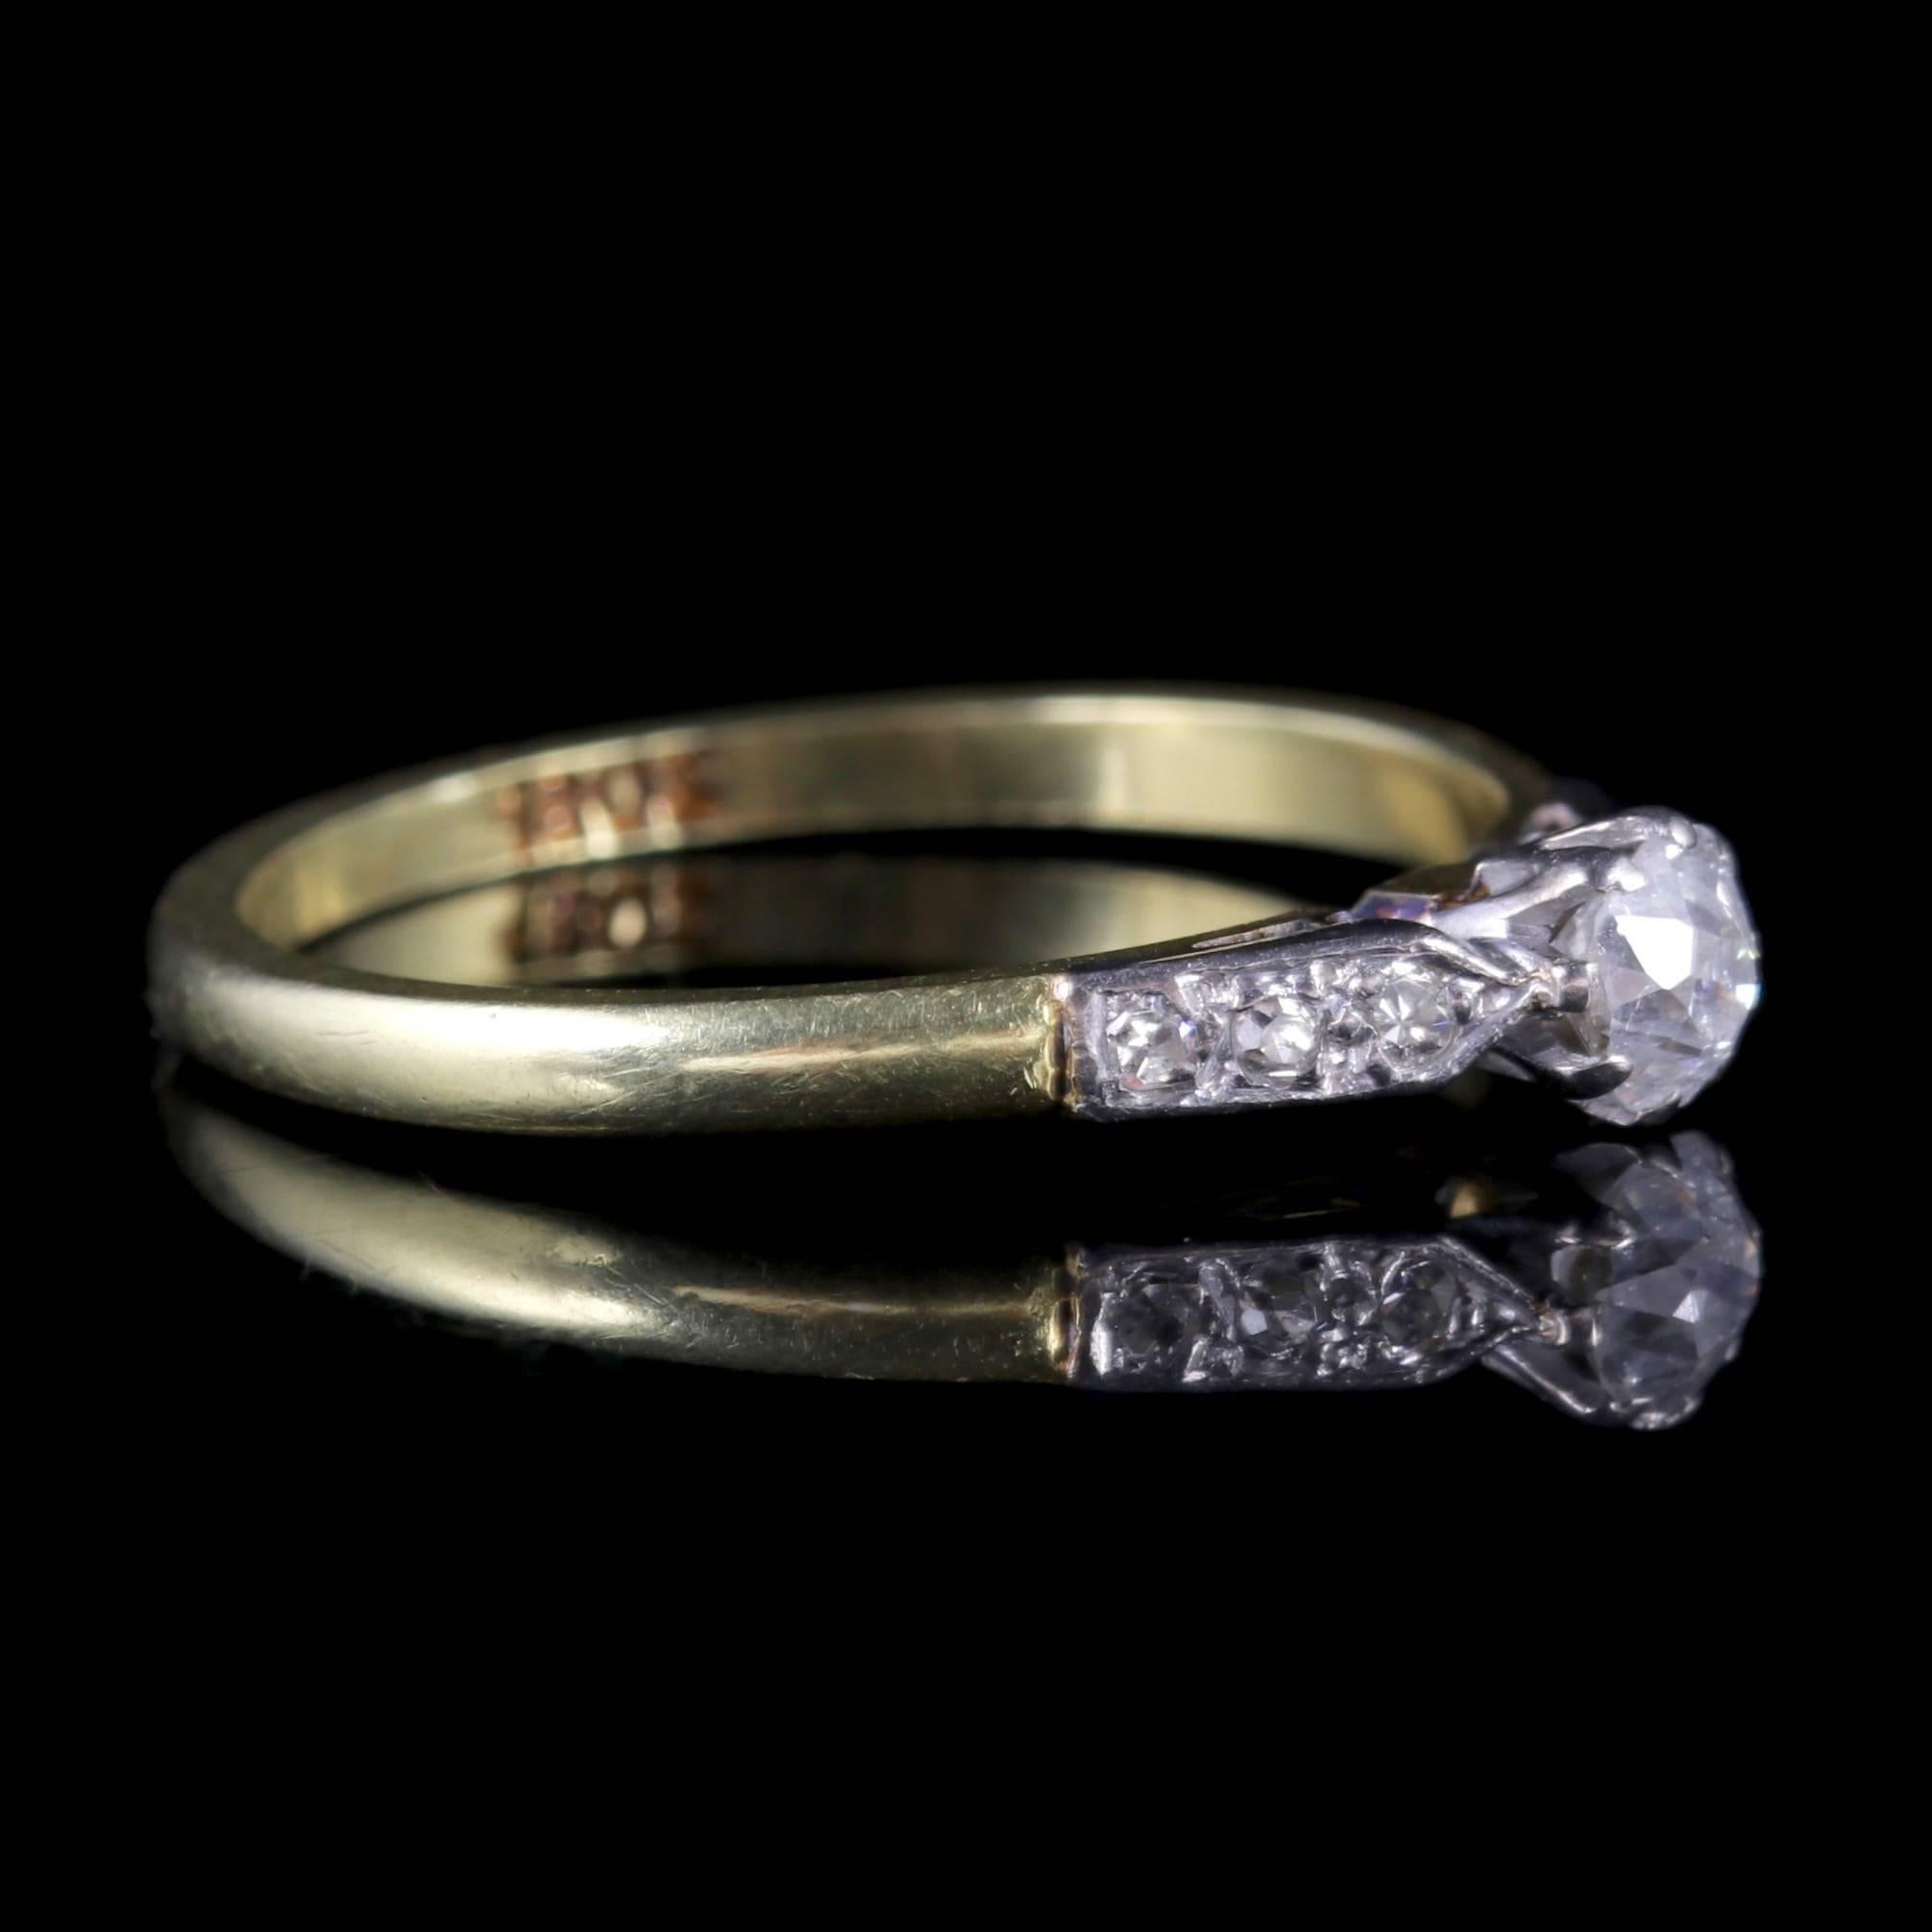 Women's Antique Edwardian Diamond Ring 18 Carat Gold Engagement Ring, circa 1915